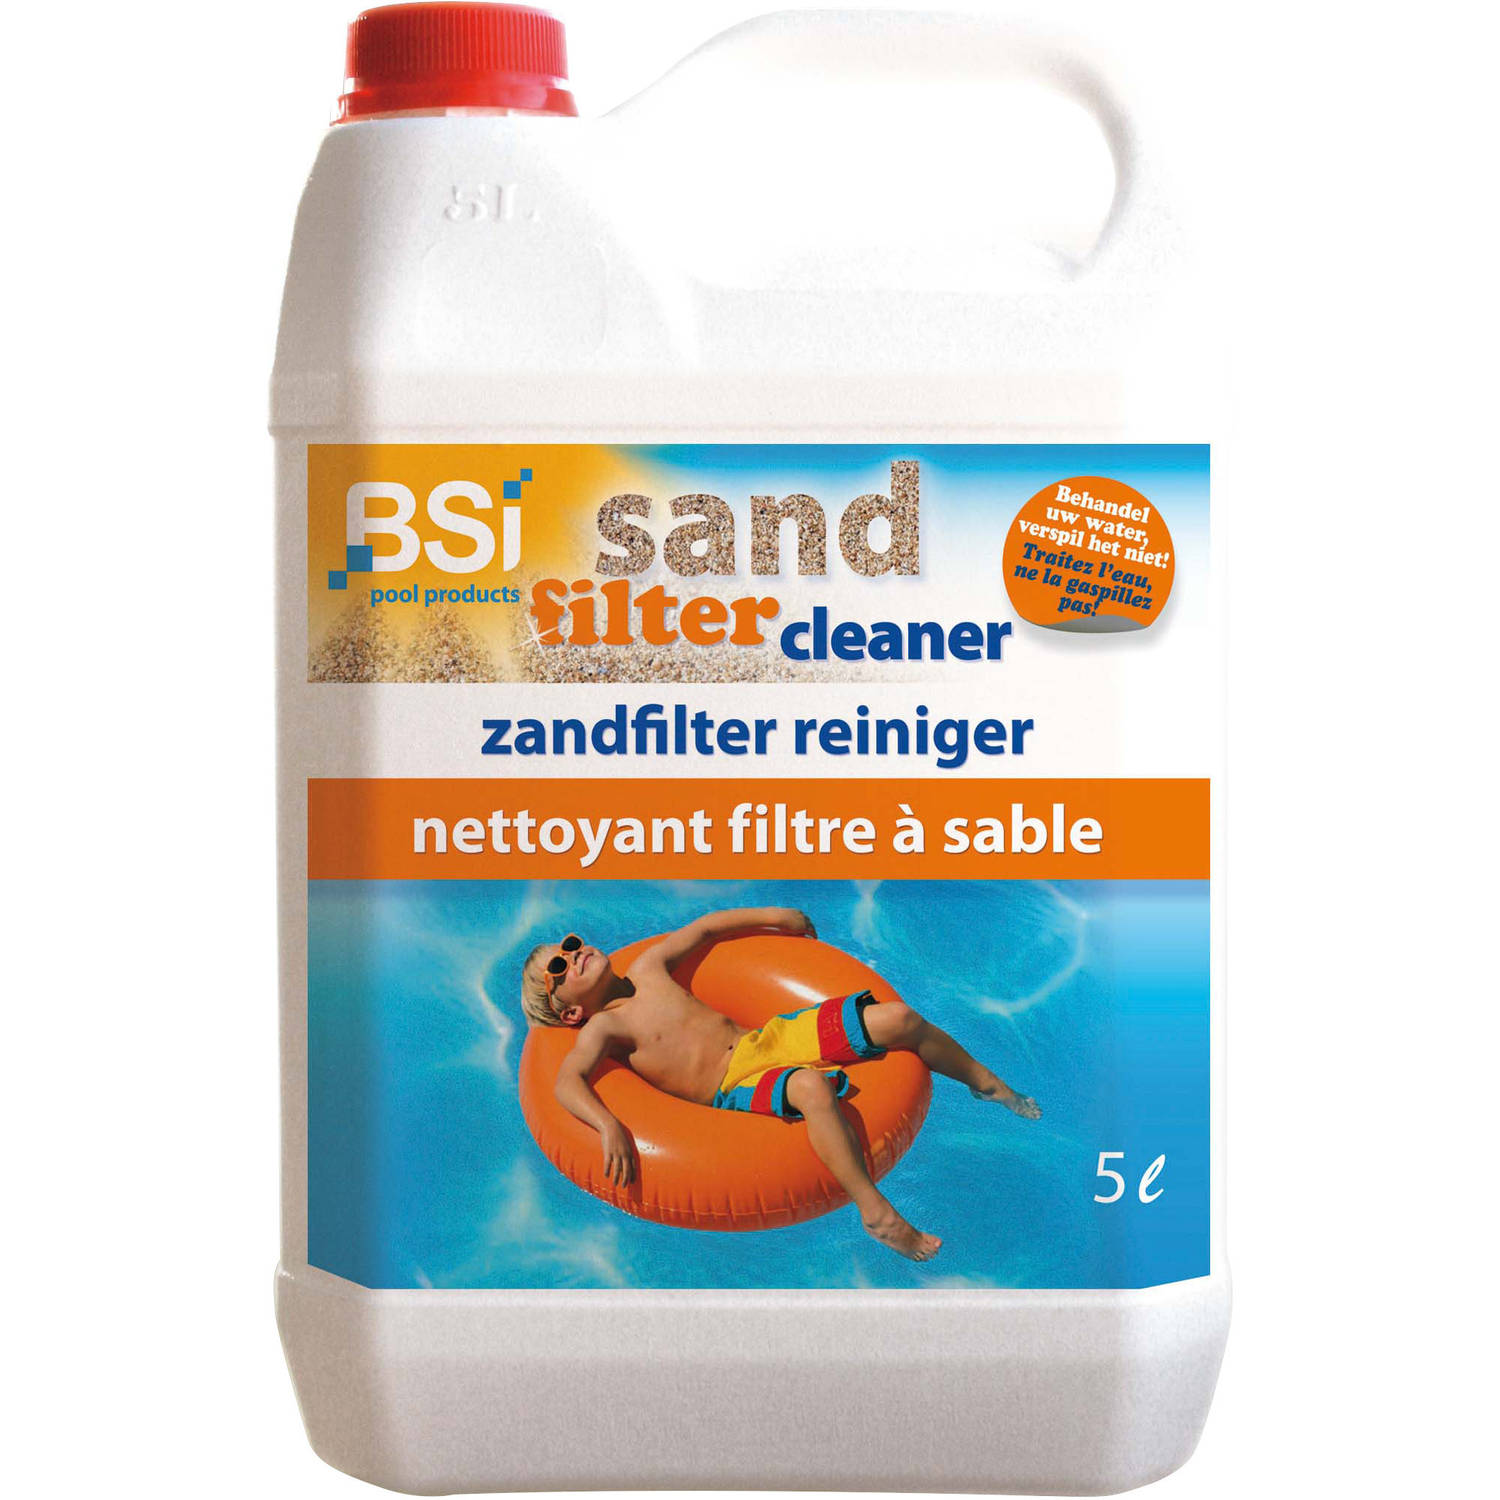 Sand filter cleaner, 5 Liter